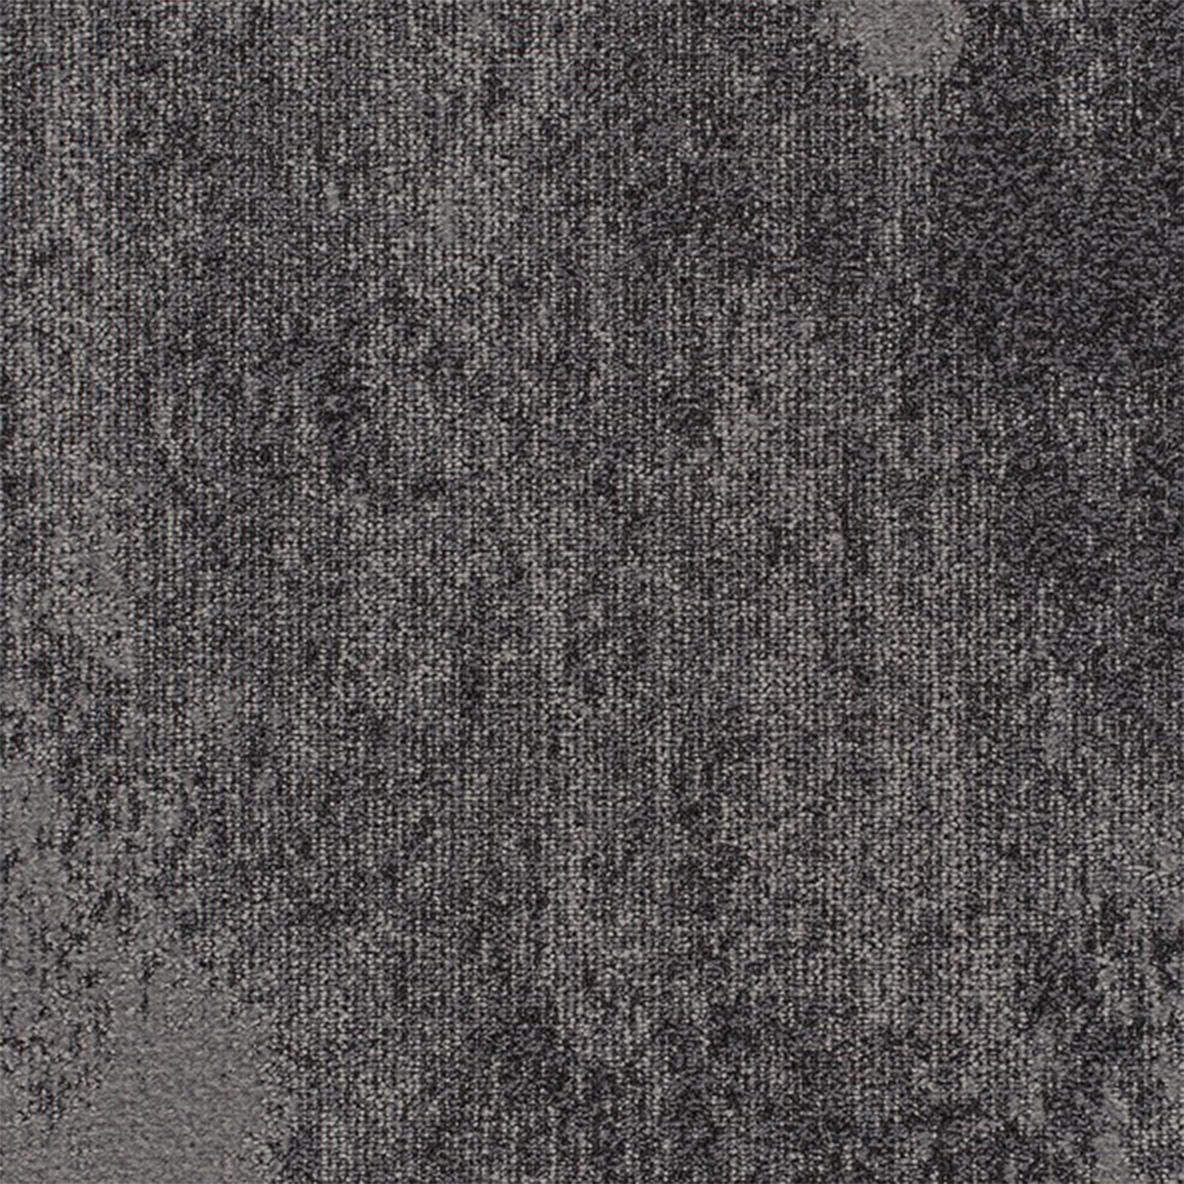 Static Commercial Carpet Tile .33 Inch x 50x50 cm per Tile Iron color close up